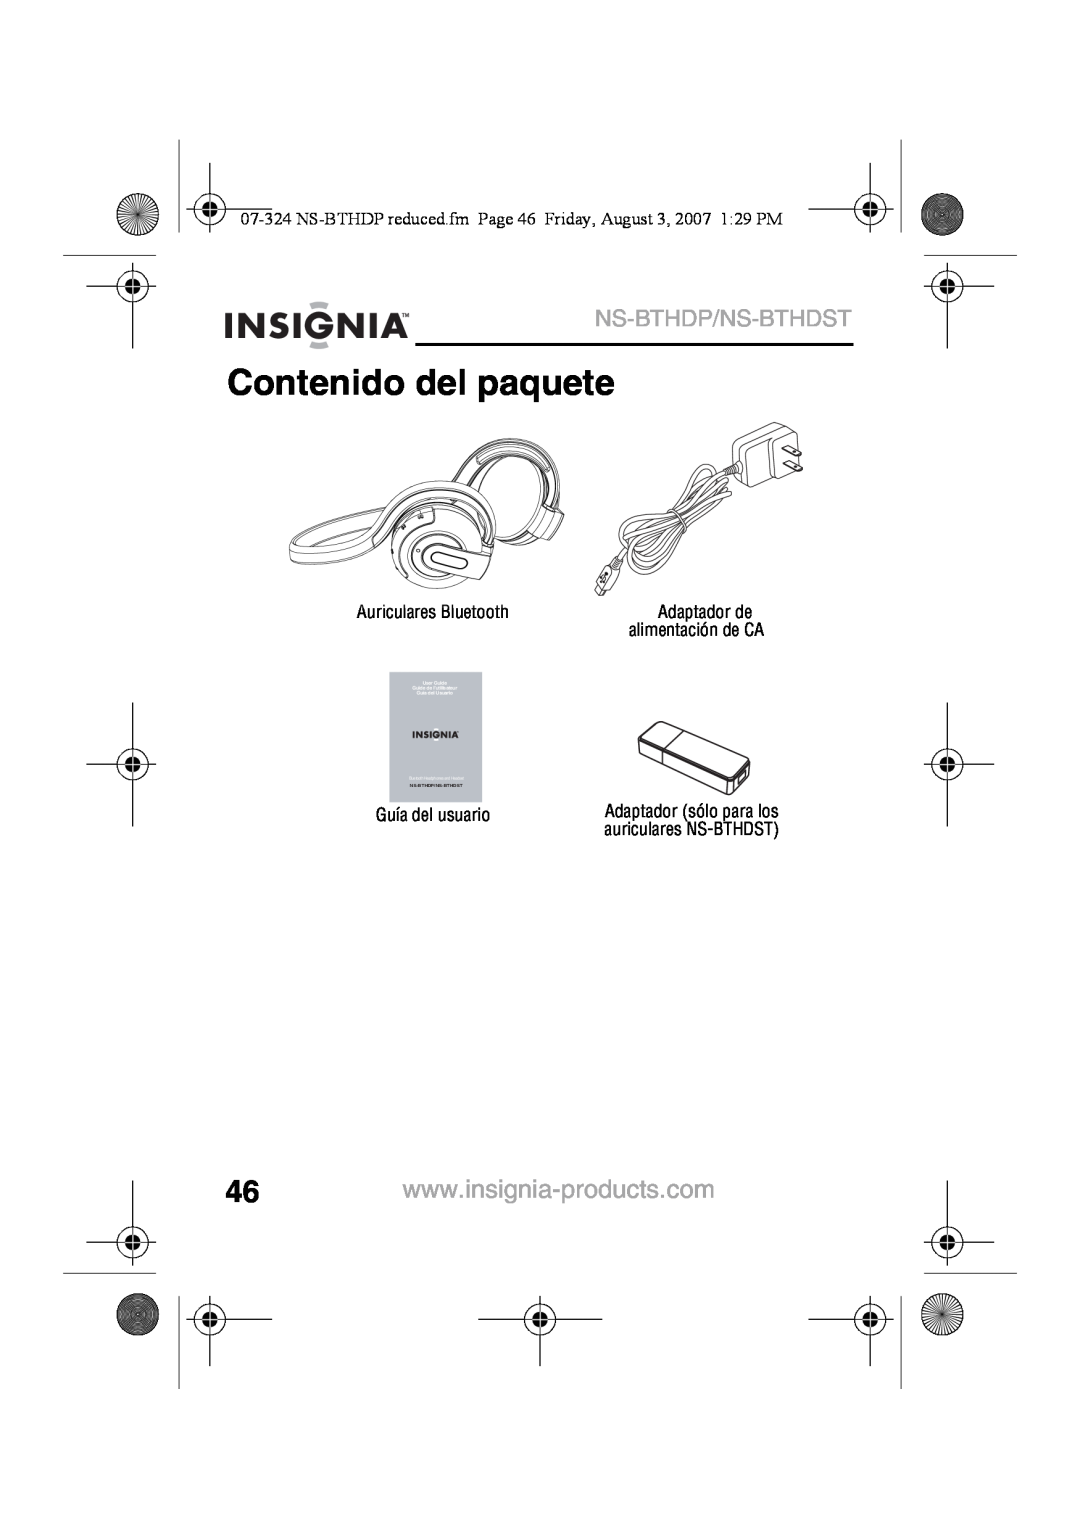 Insignia manual Contenido del paquete, Ns-Bthdp/Ns-Bthdst, alimentación de CA, Guía del usuario, auriculares NS-BTHDST 